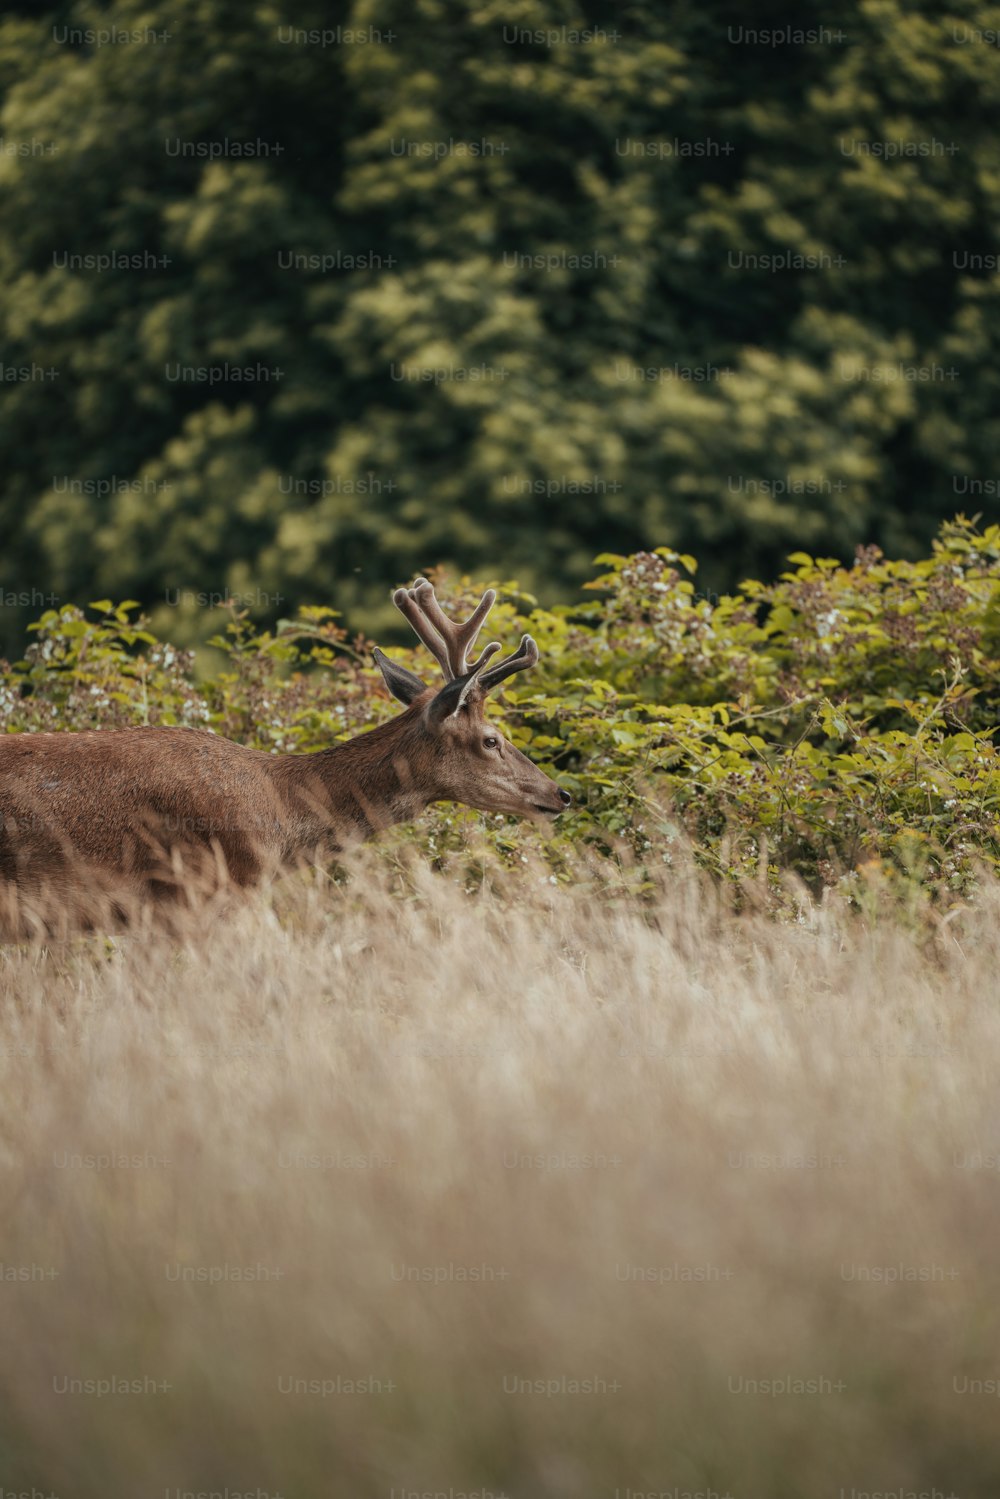 a deer standing in a field of tall grass